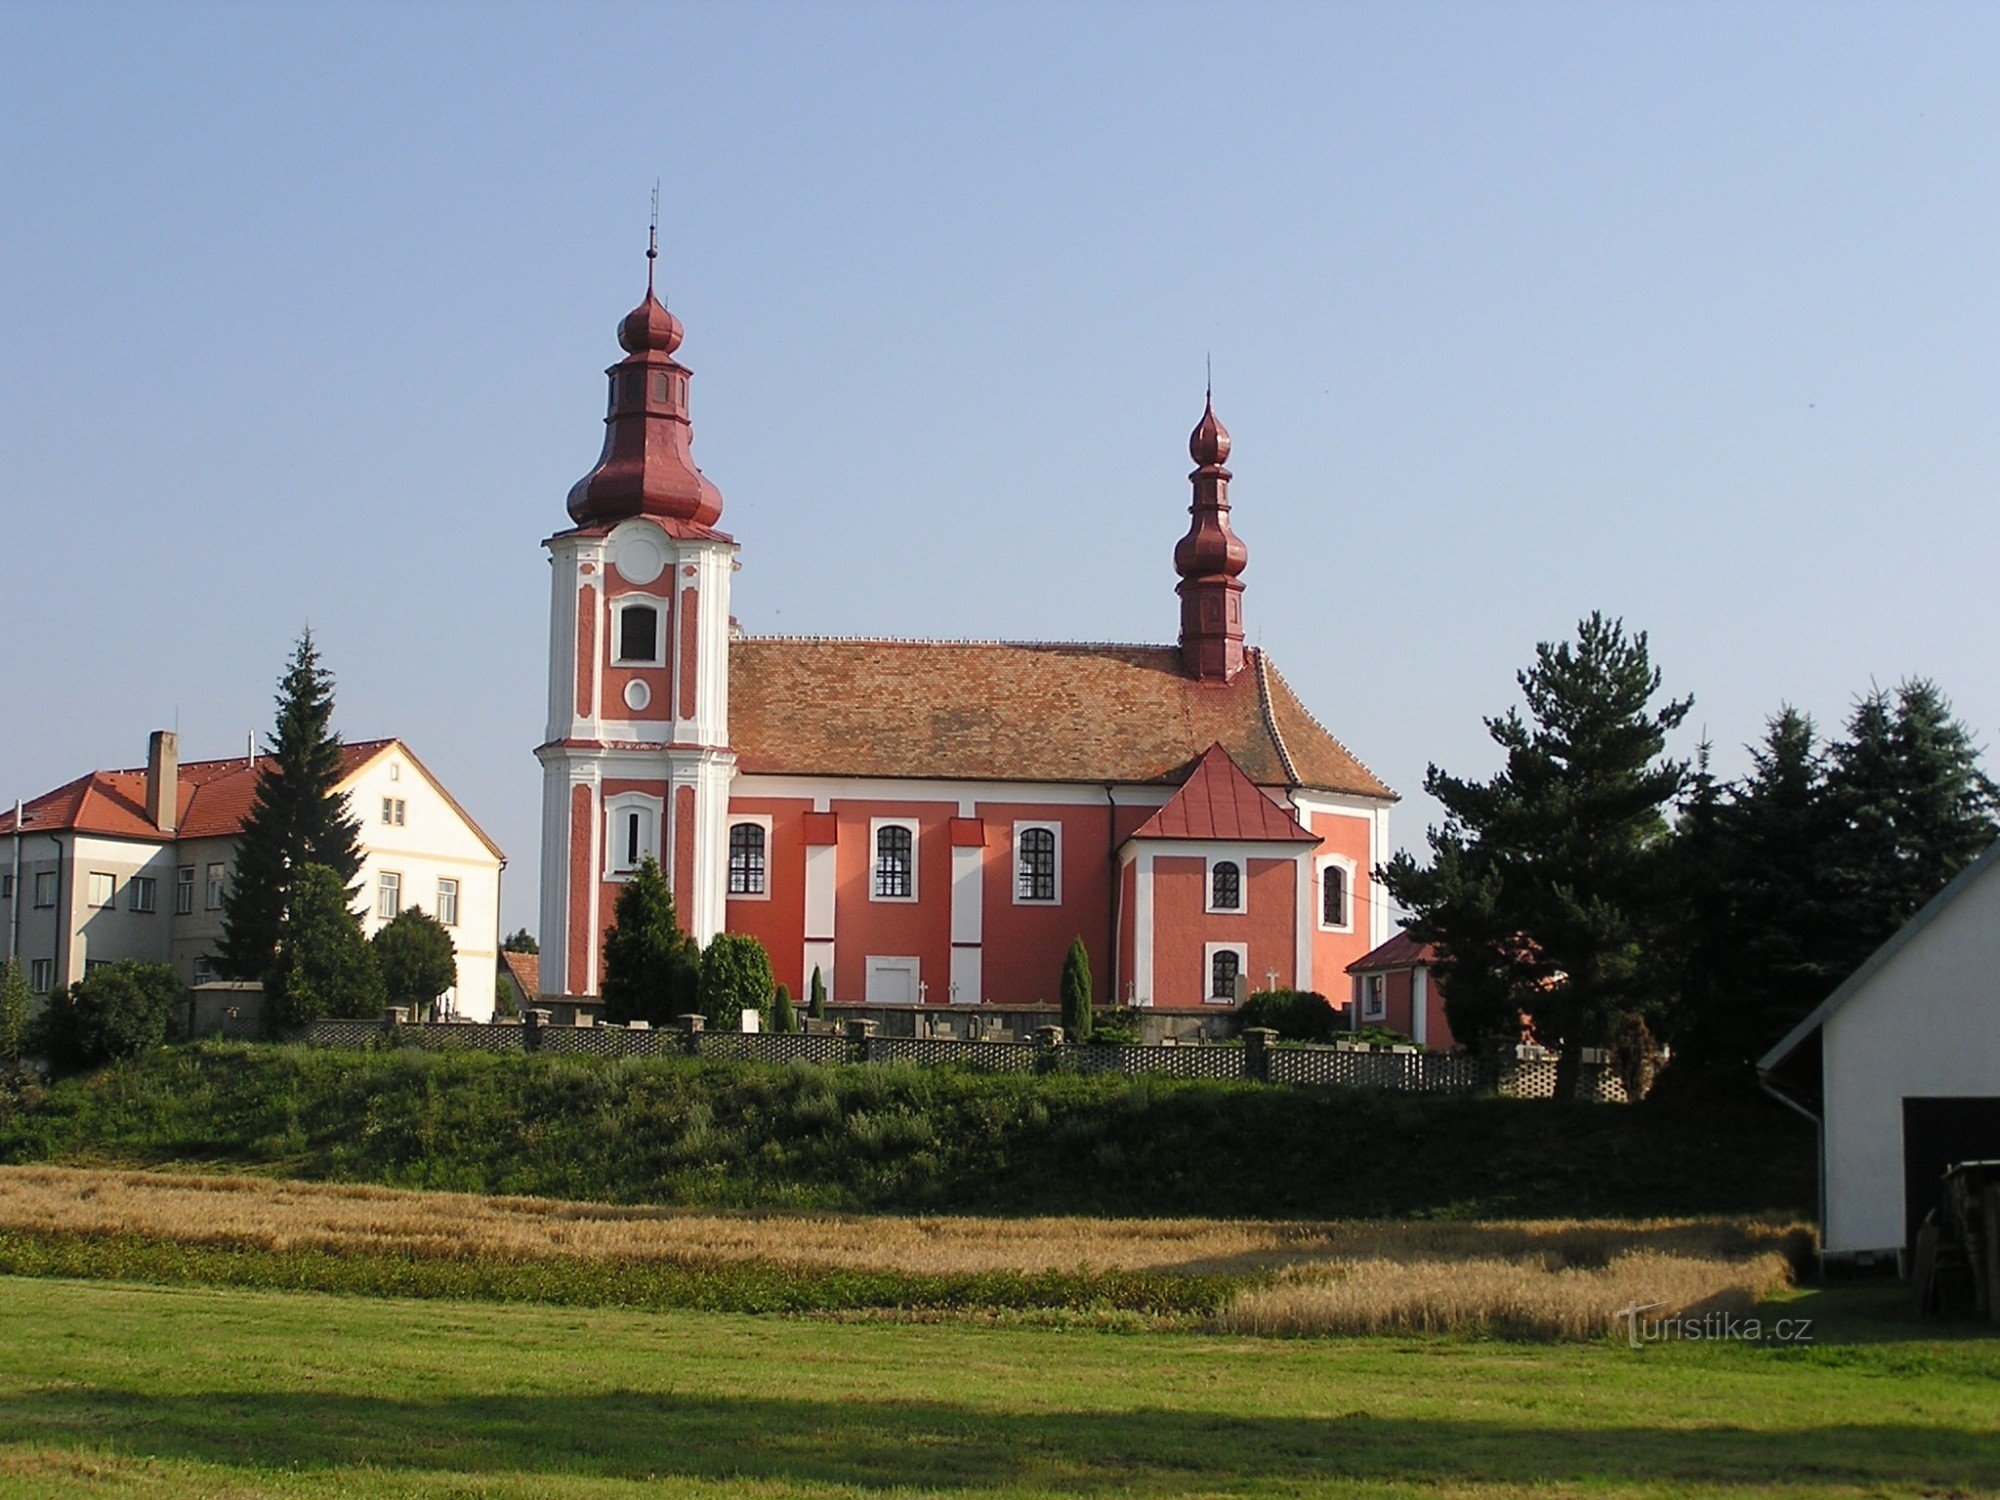 Church of St. Bartholomew in Rozsochy - August 3.8.2003, XNUMX